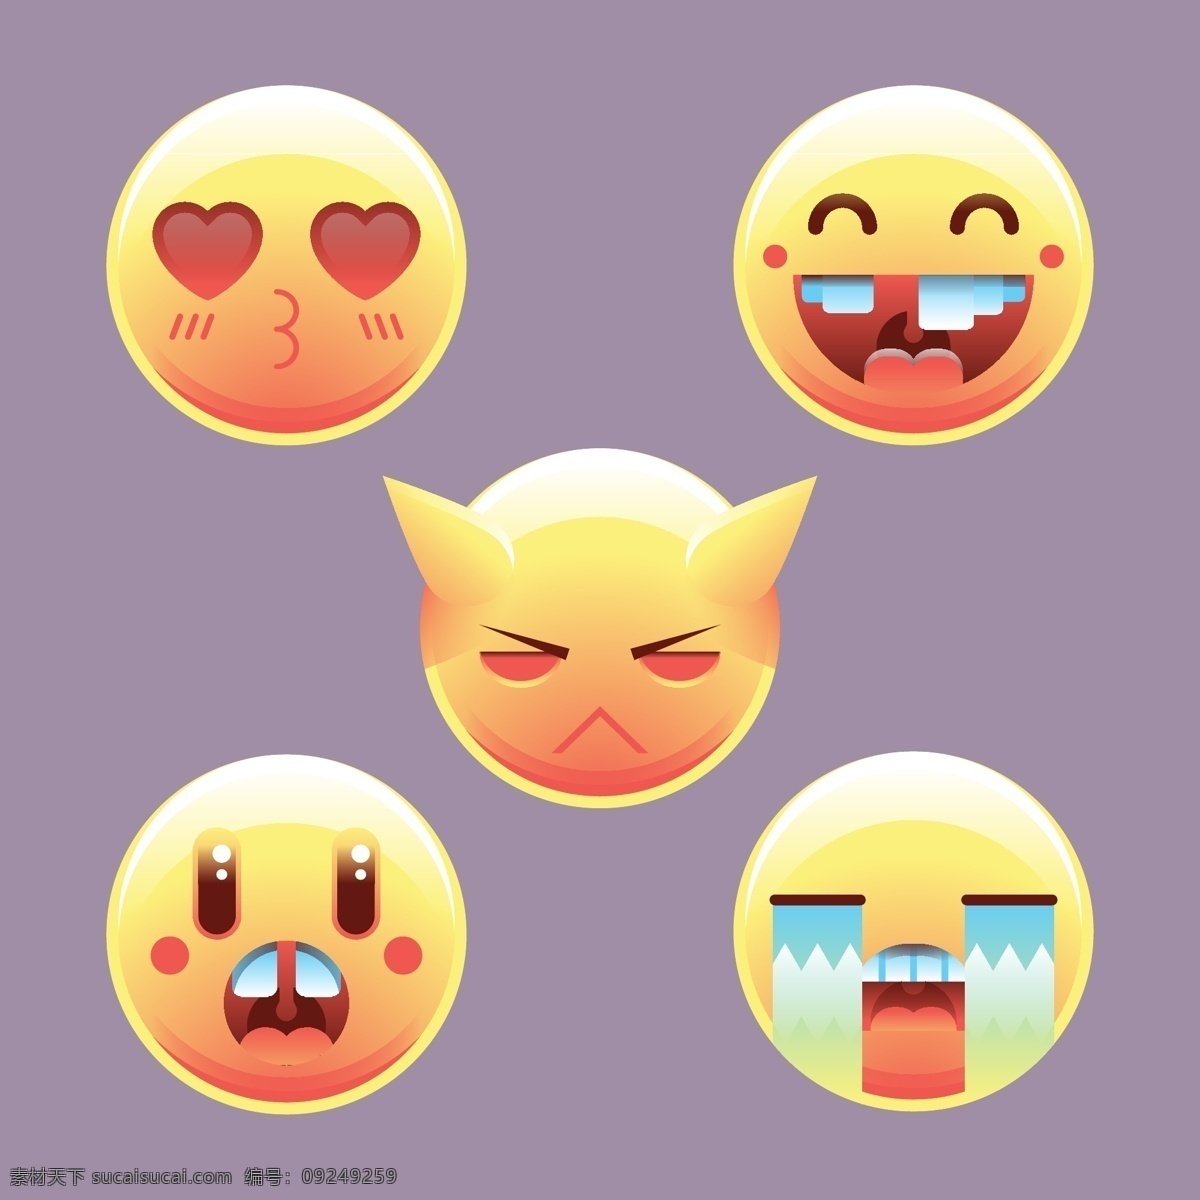 圆形表情图标 橙色圆形表情 表情图标 qq表情 手机表情 笑脸表情 难过表情 生气表情 可爱表情 表情 漫画表情 动画表情 各种表情 害羞表情 开心表情 痛哭表情 笑脸 表情包